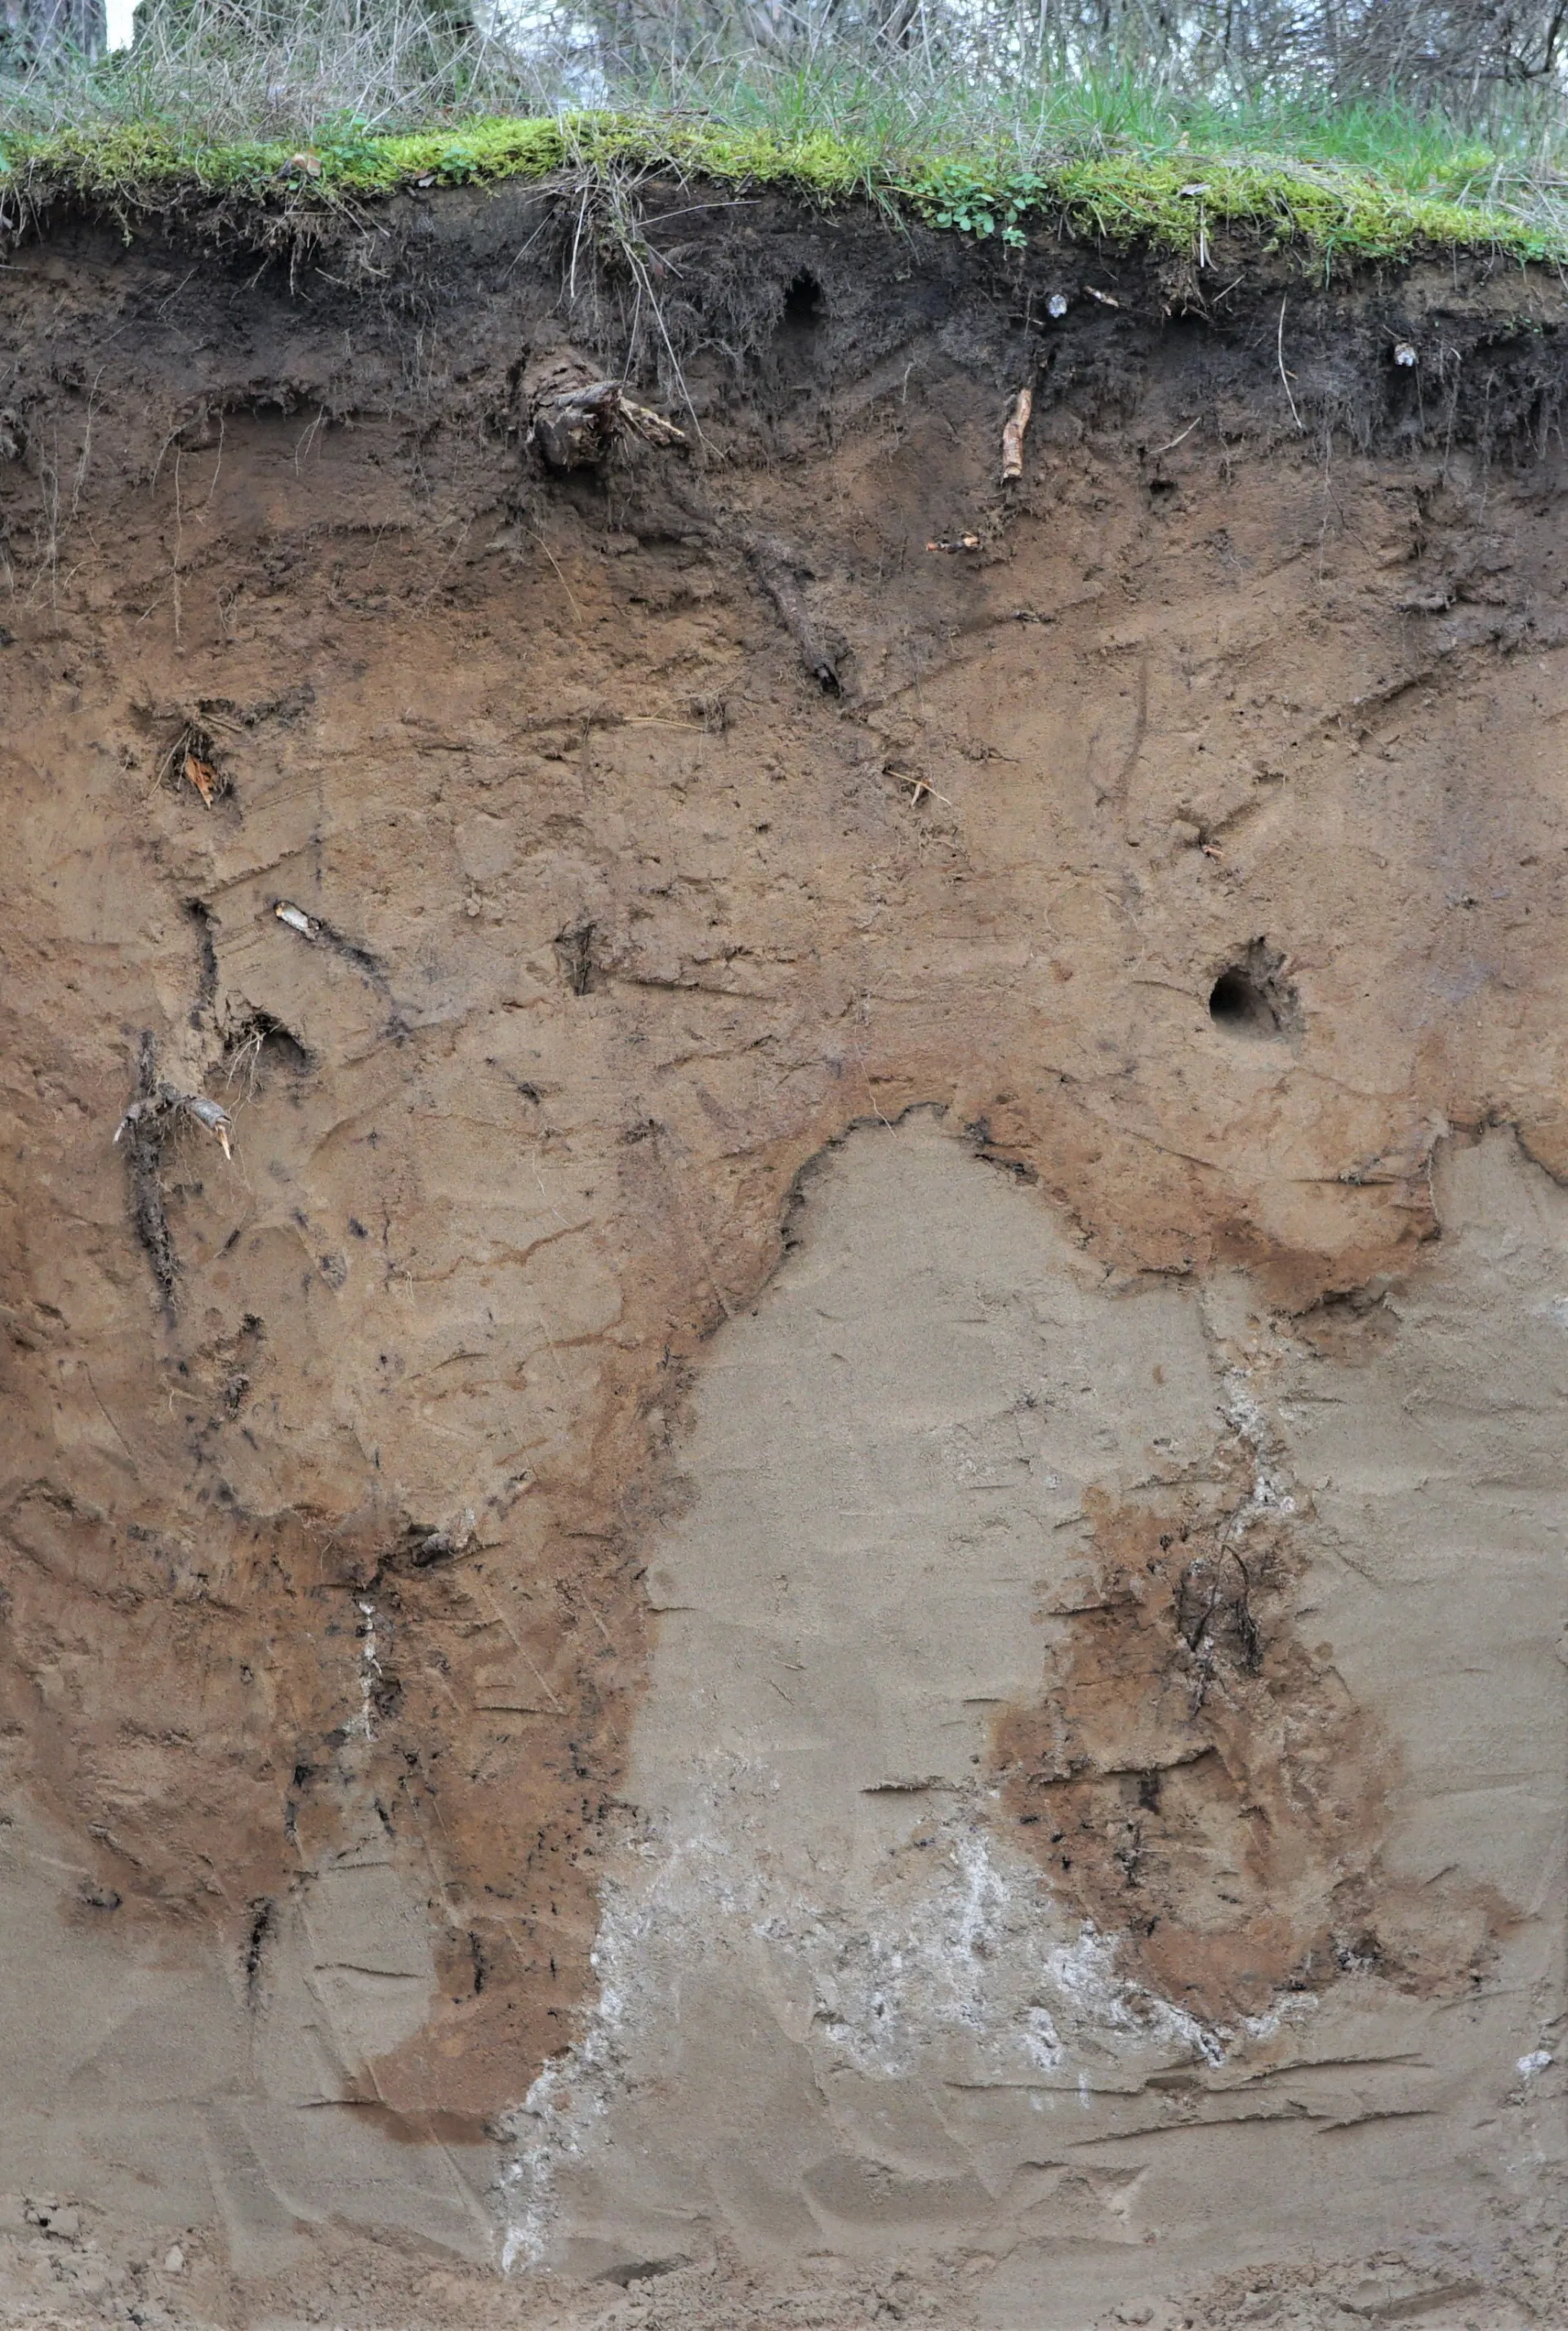 Profilwand eines Sandbodens. Unter dunklem Humus folgt hellbrauner Sand, der mit girlandenförmiger Grenze scharf vom unterlagernden hellen Sand abgegrenzt ist.